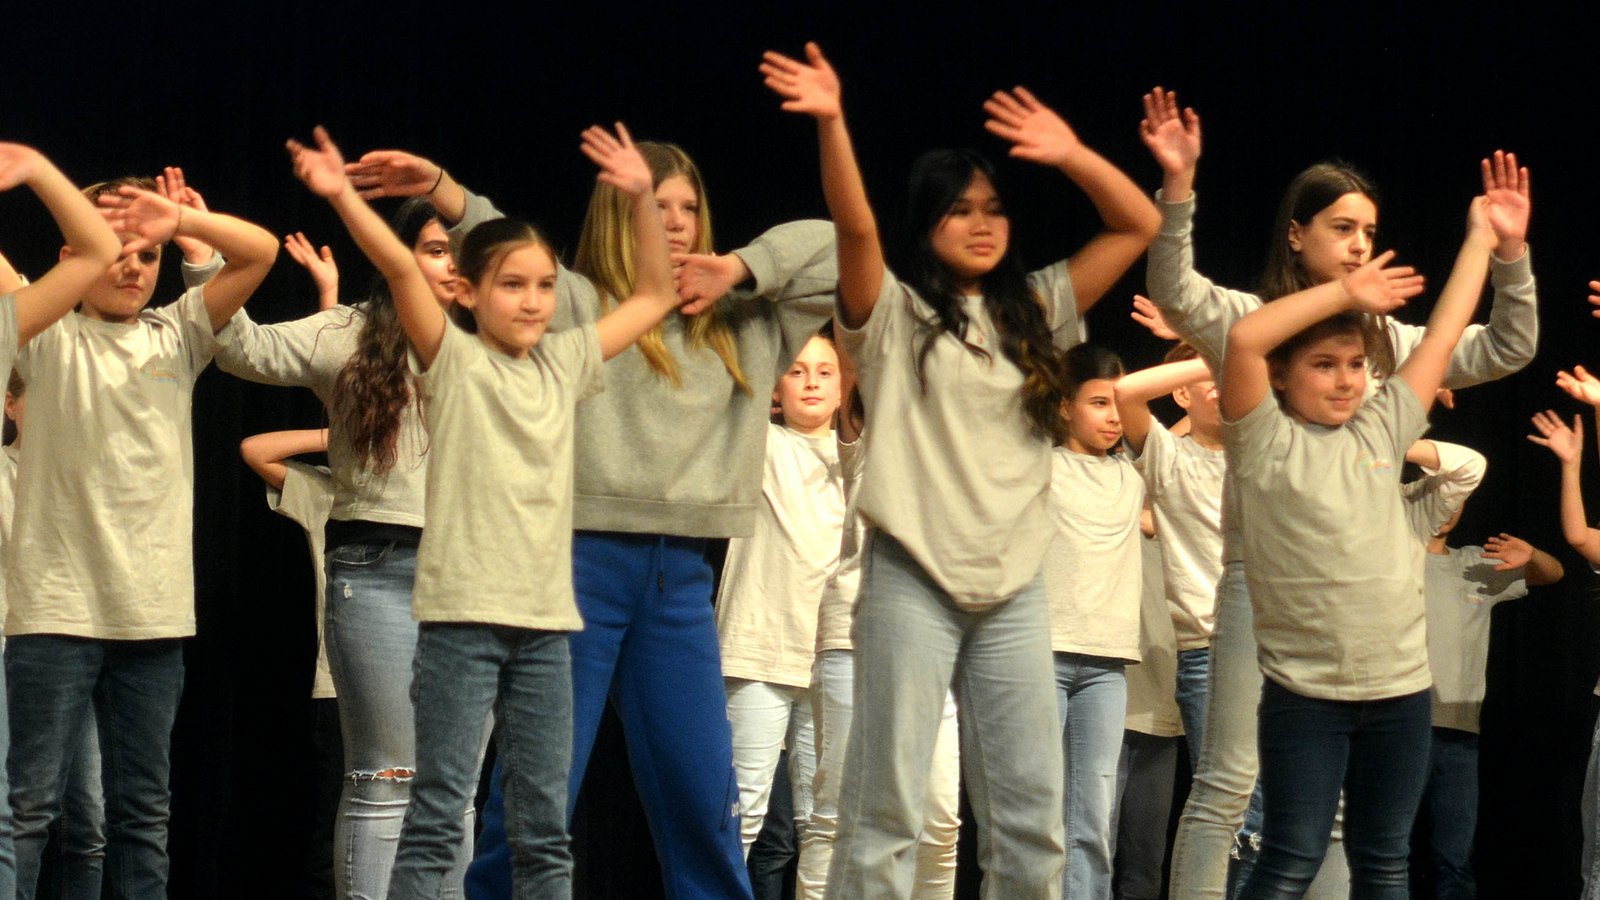 Die Schülerinnen und Schüler begrüßten den Schulleiter singend und tanzend. Fotos: Stahlfeld